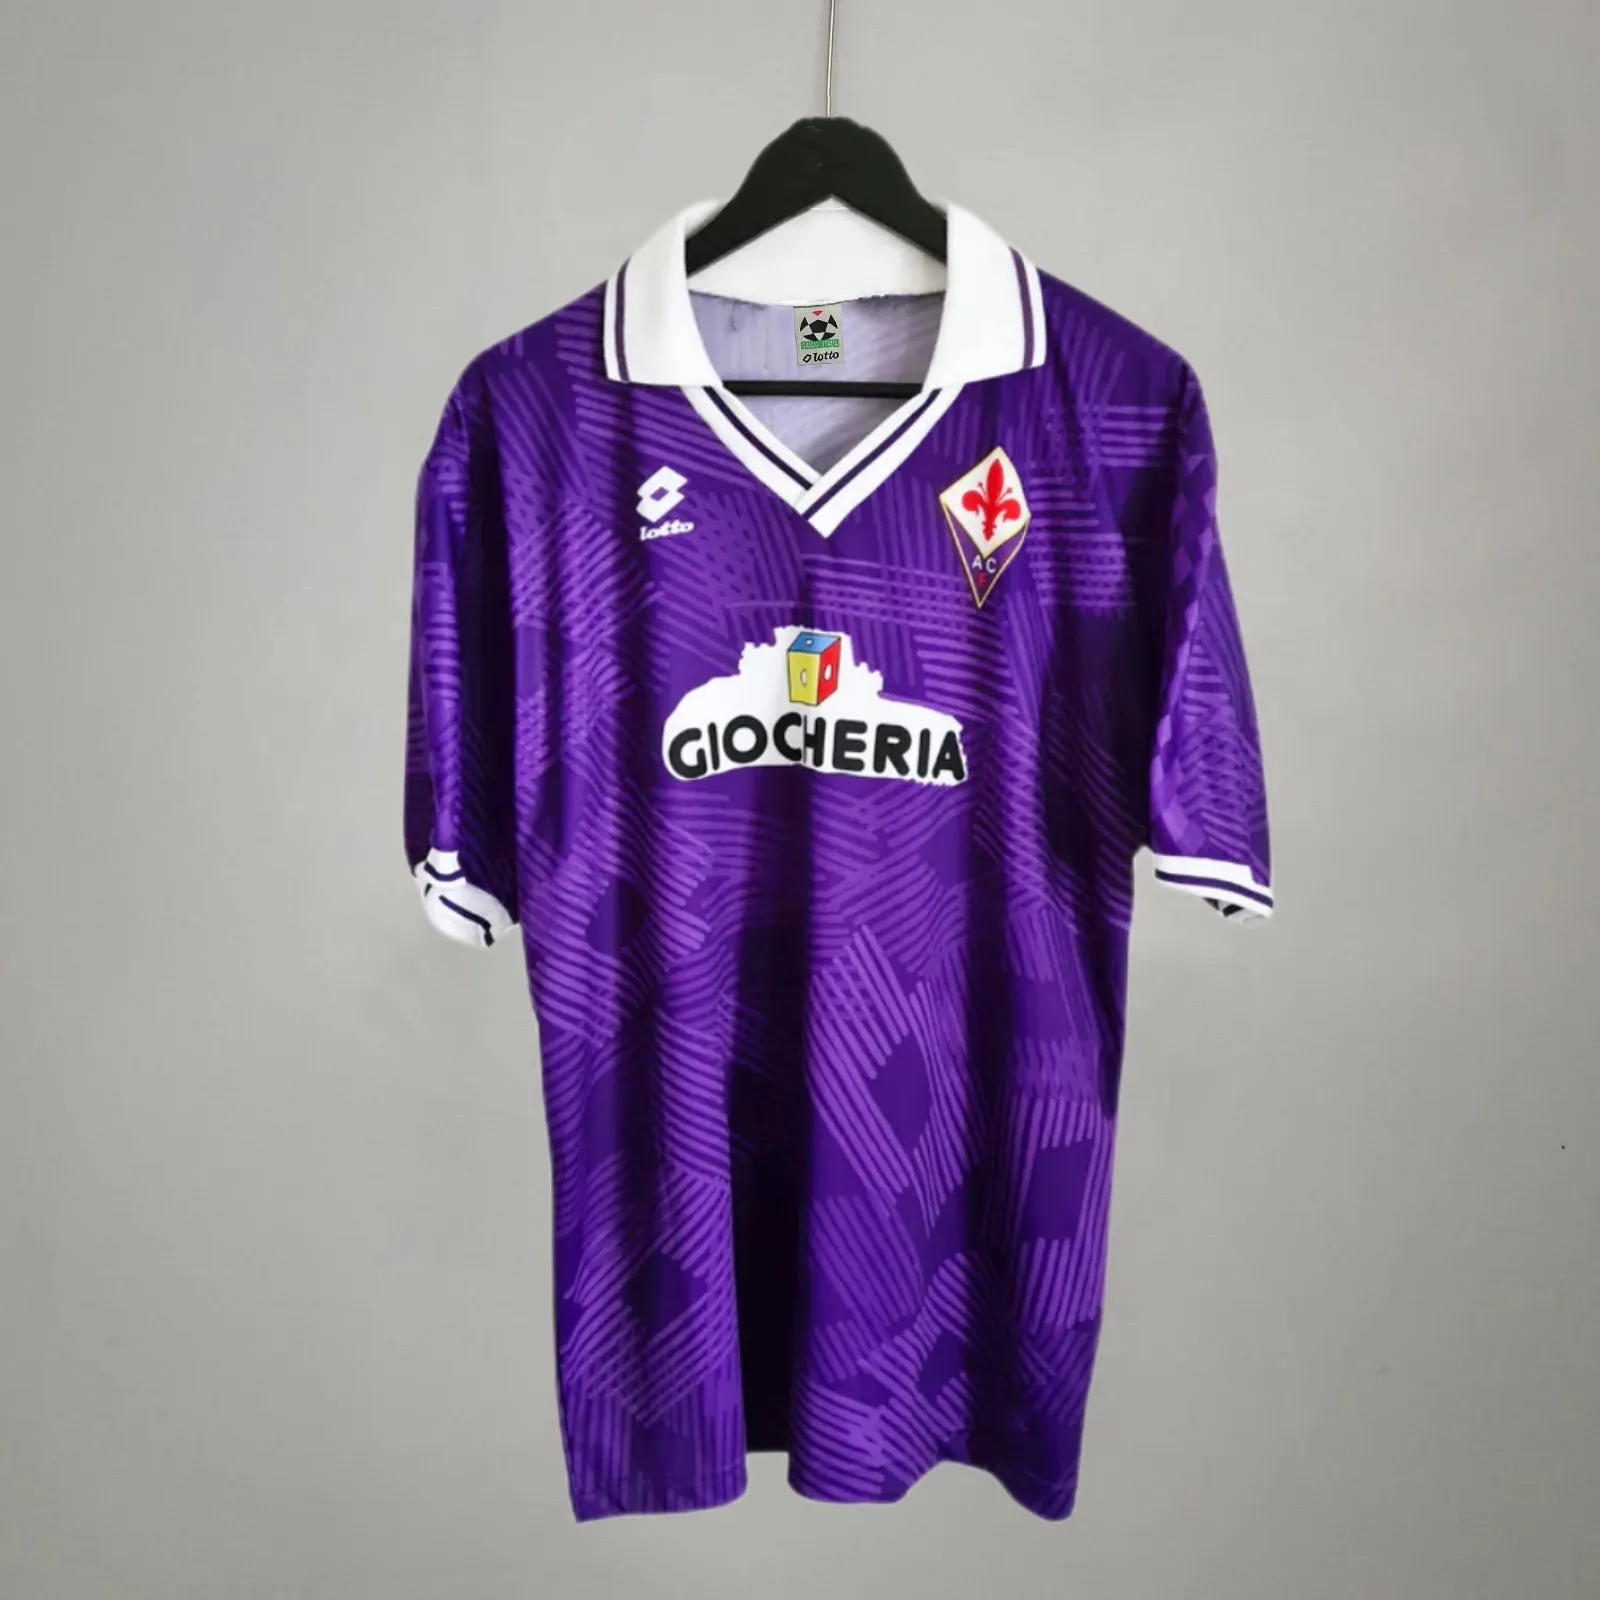 Fiorentina 1991/1992 Home Retro Jersey: A Timeless Classic for the Retro Style Aficionado